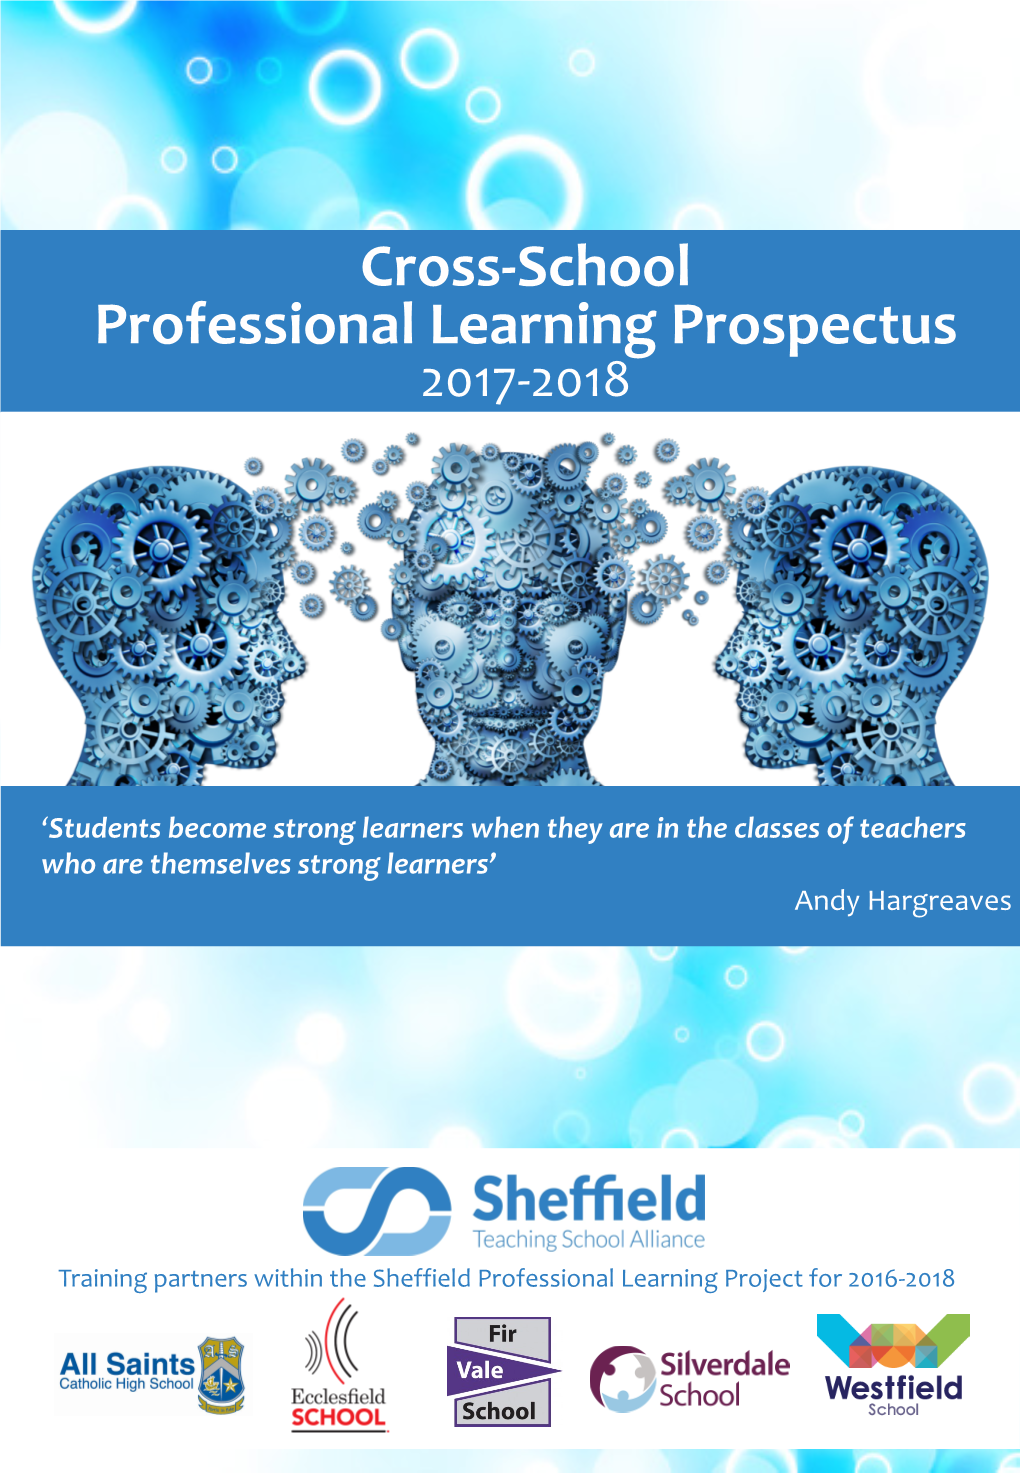 Cross-School Professional Learning Prospectus 2017-2018